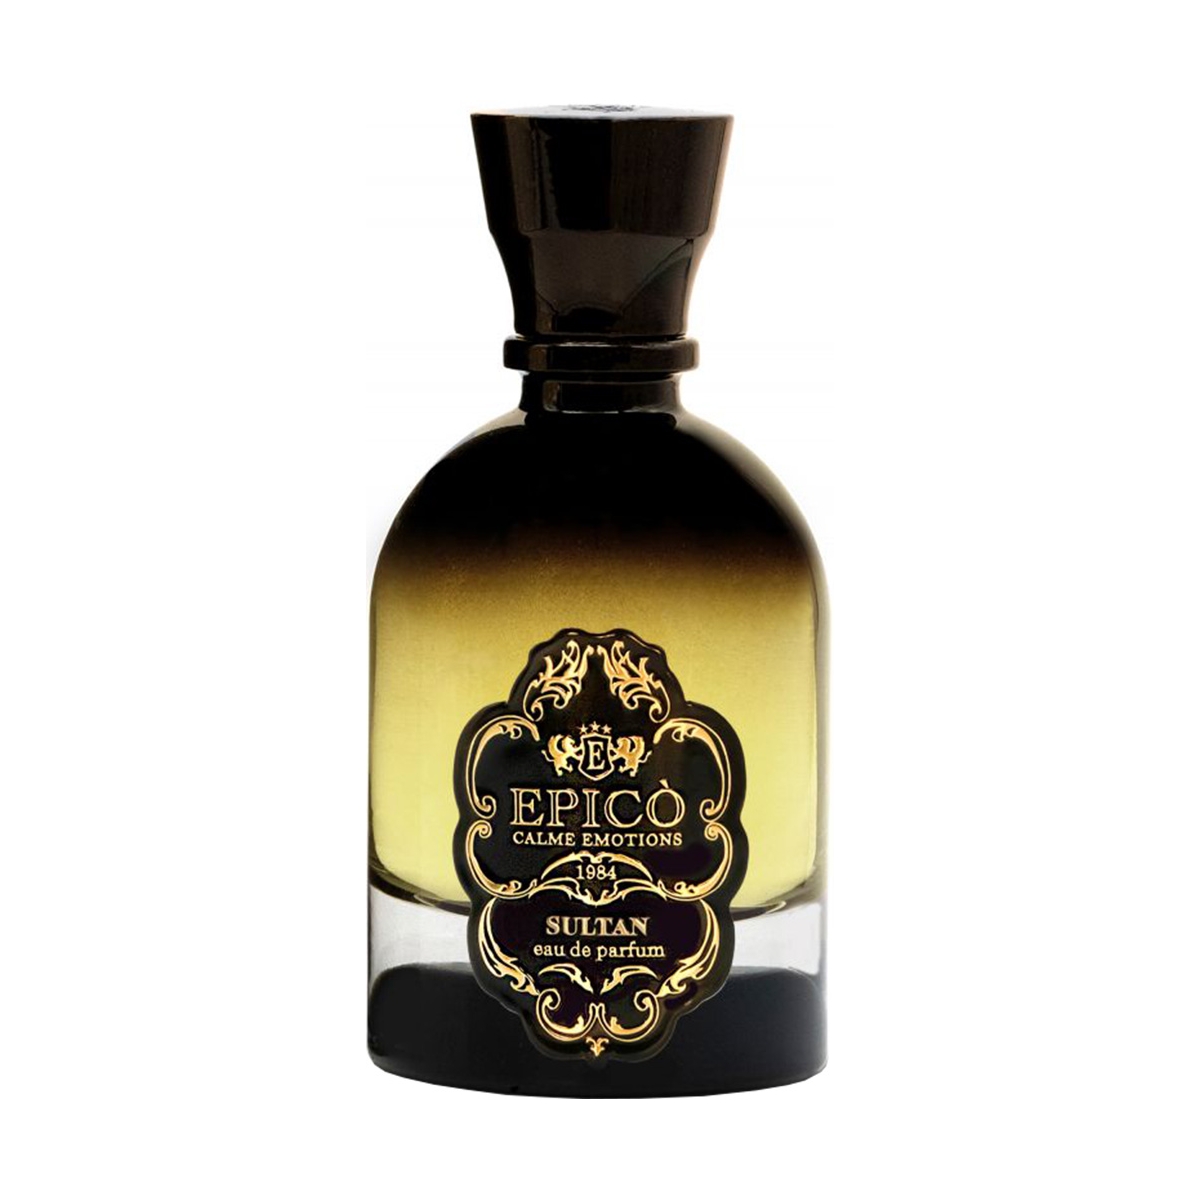 Sultan Epico Artistic Perfume Perfumes, Unisex Perfumes, Arada Perfumes